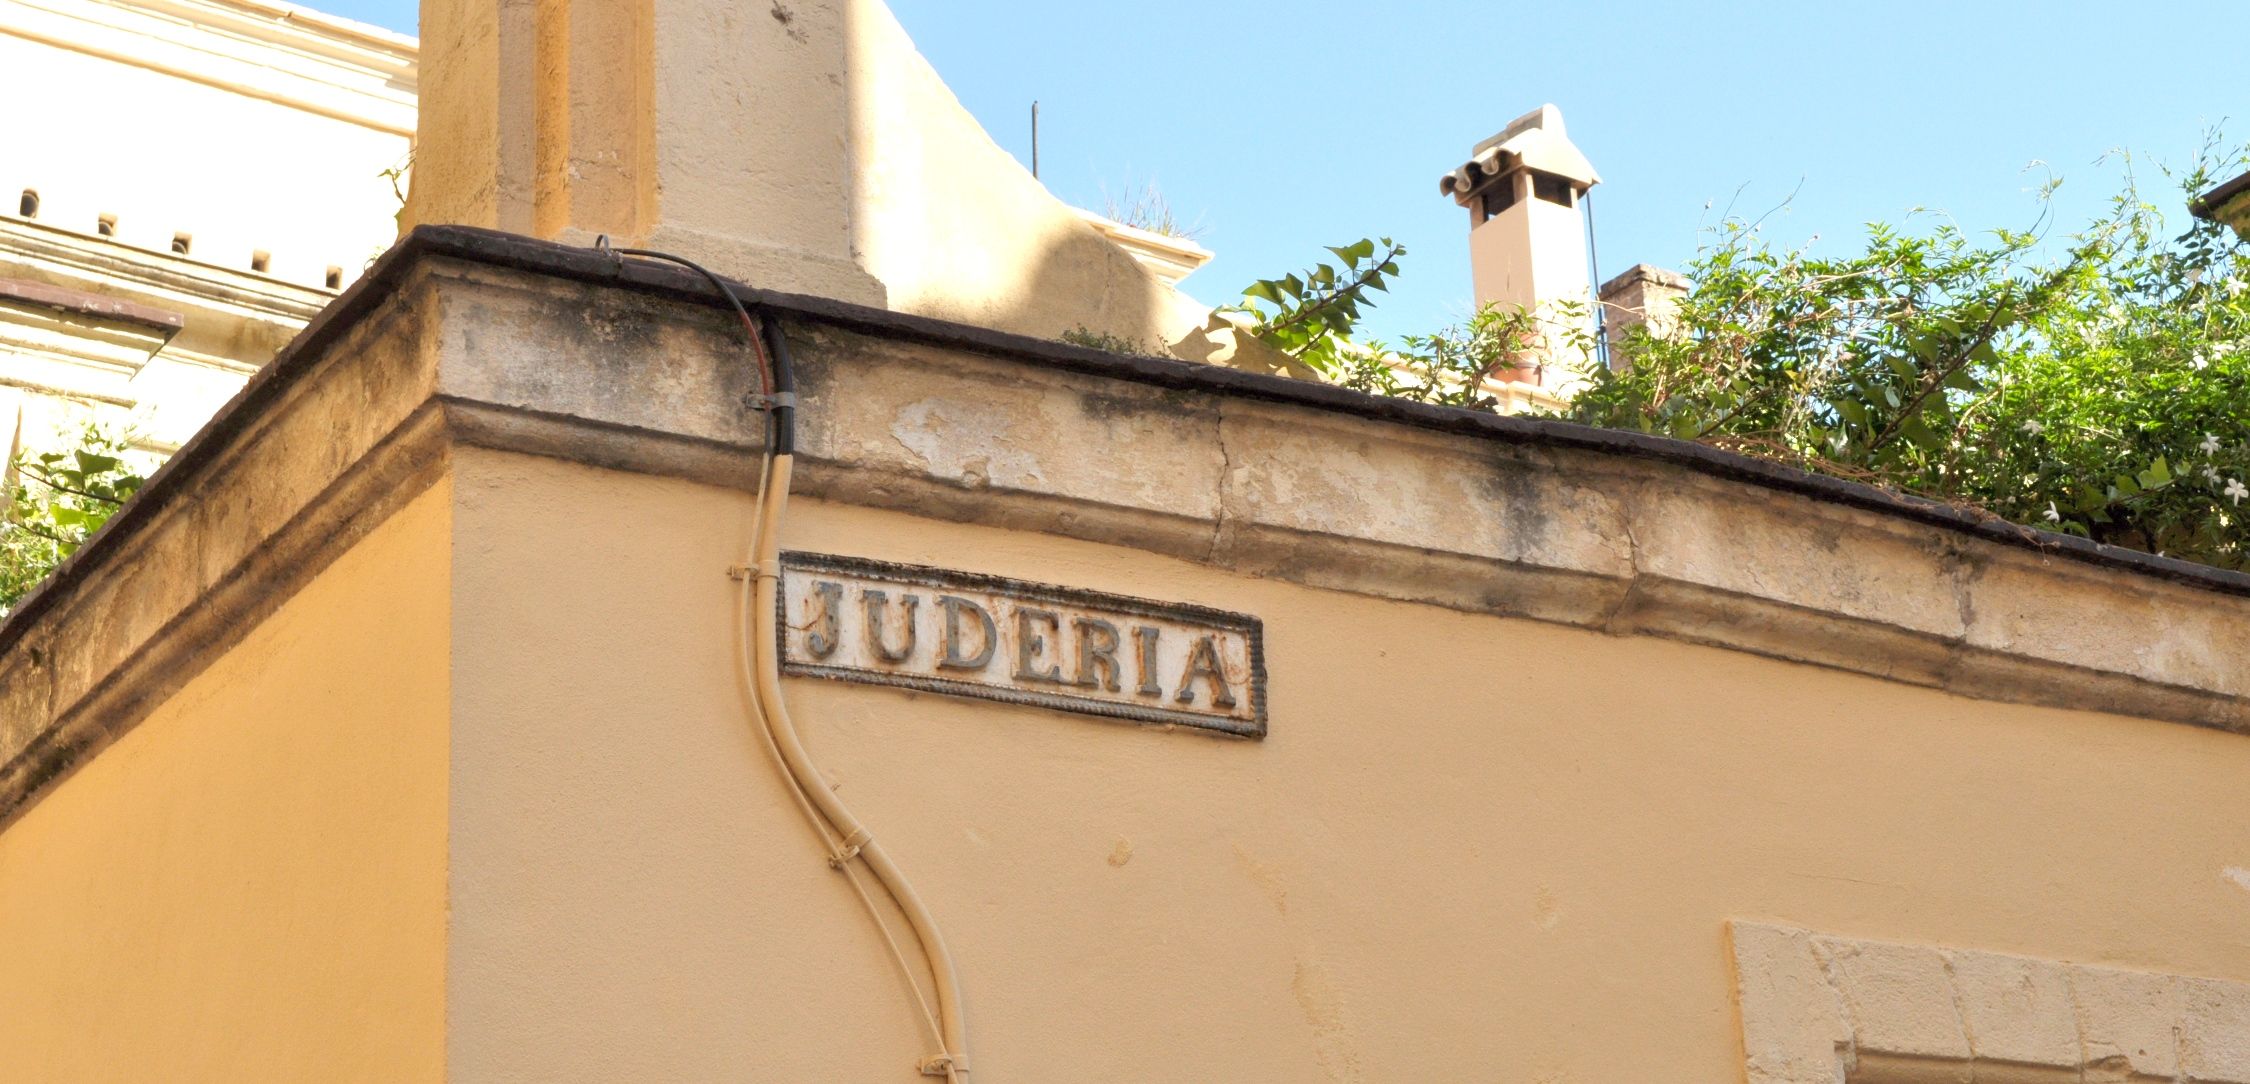 El pasado judío de Jerez promete convertirse en el nuevo atractivo turístico de la ciudad. En la imagen, calle Judería.